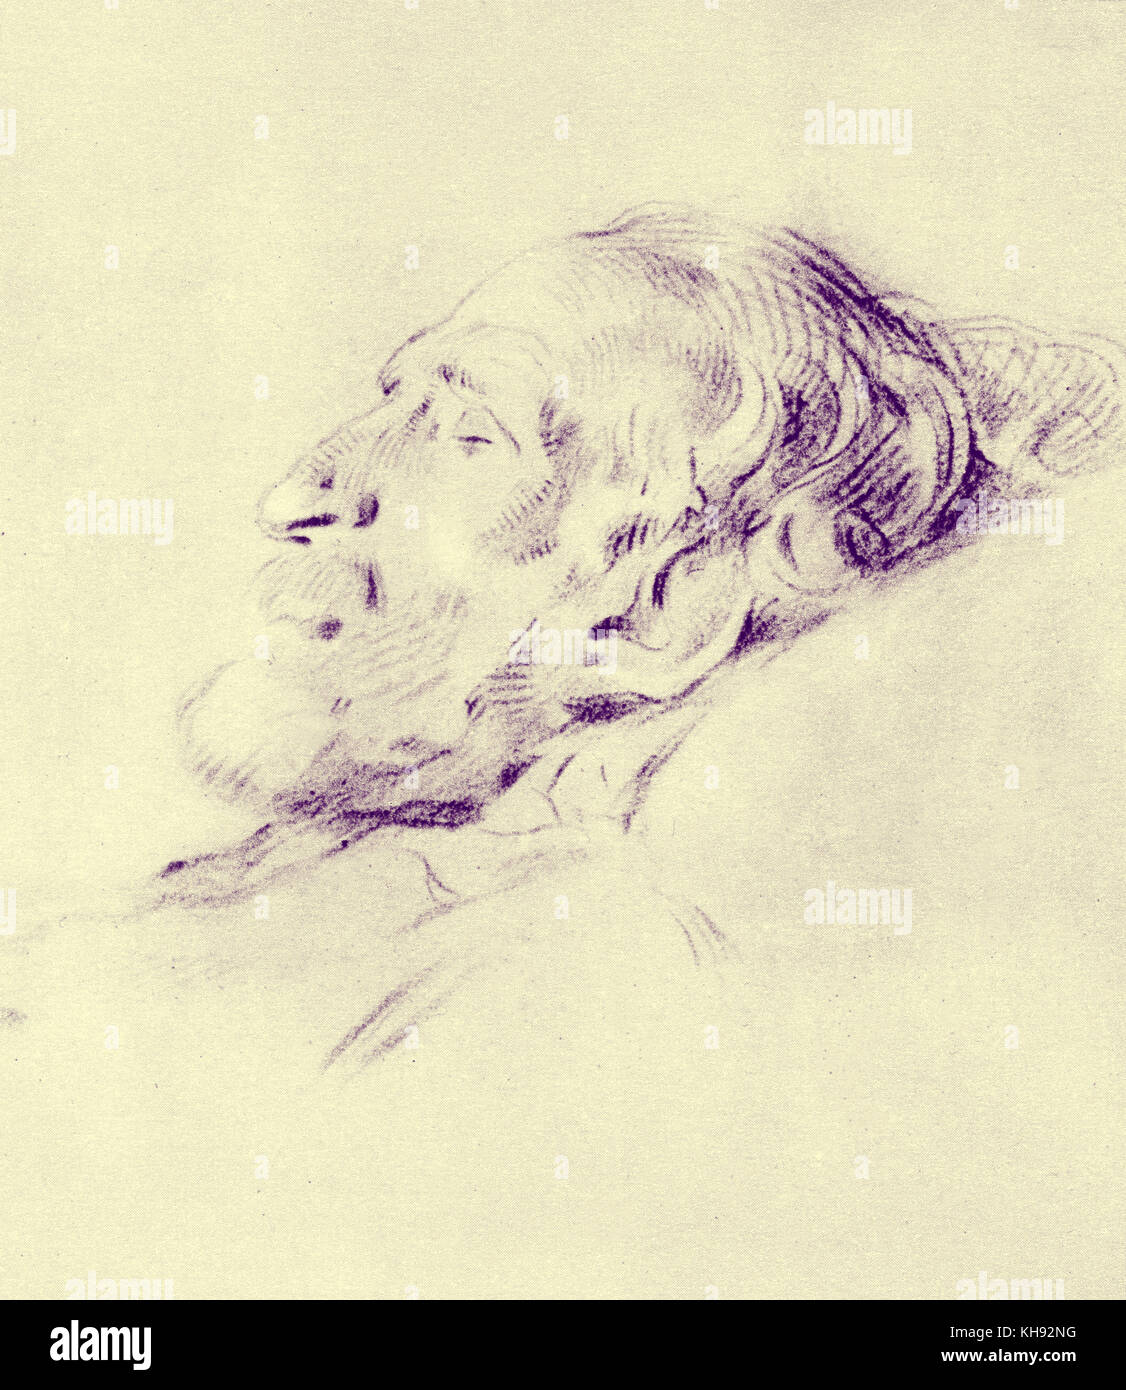 Giuseppe Verdis Totenmaske - Abbildung von L. Pogliaghi. Maske aus Gesso. Italienischer Komponist, 9 oder 10 Oktober 1813 - 27. Januar 1901. Stockfoto